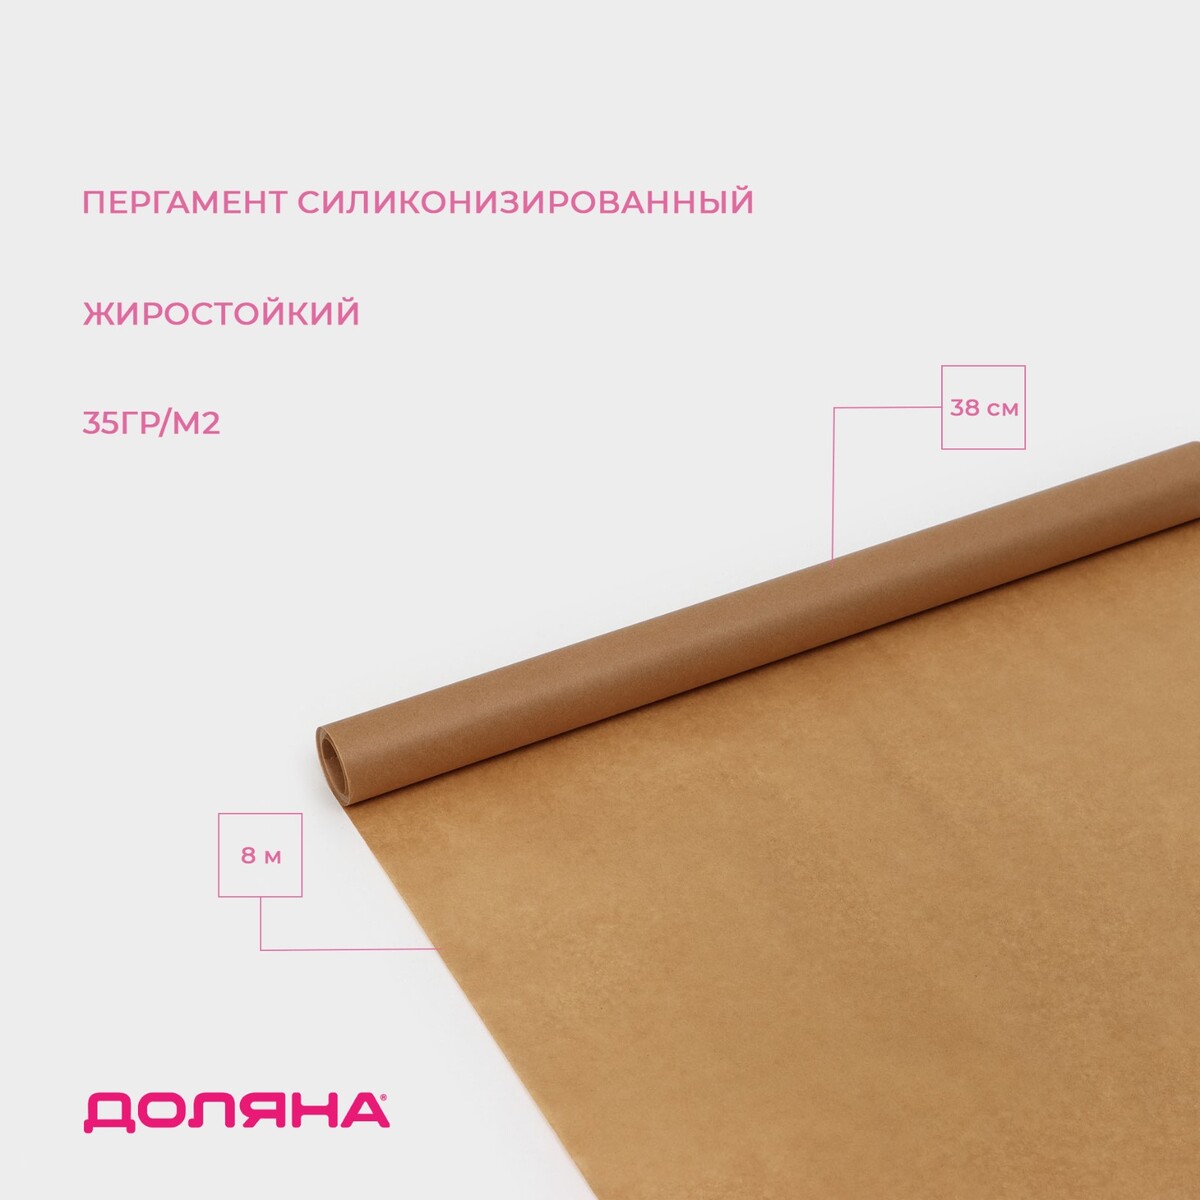 Пергамент силиконизированный доляна, 38 см х 8 м, коричневый, жиростойкий подпергамент силиконизированный